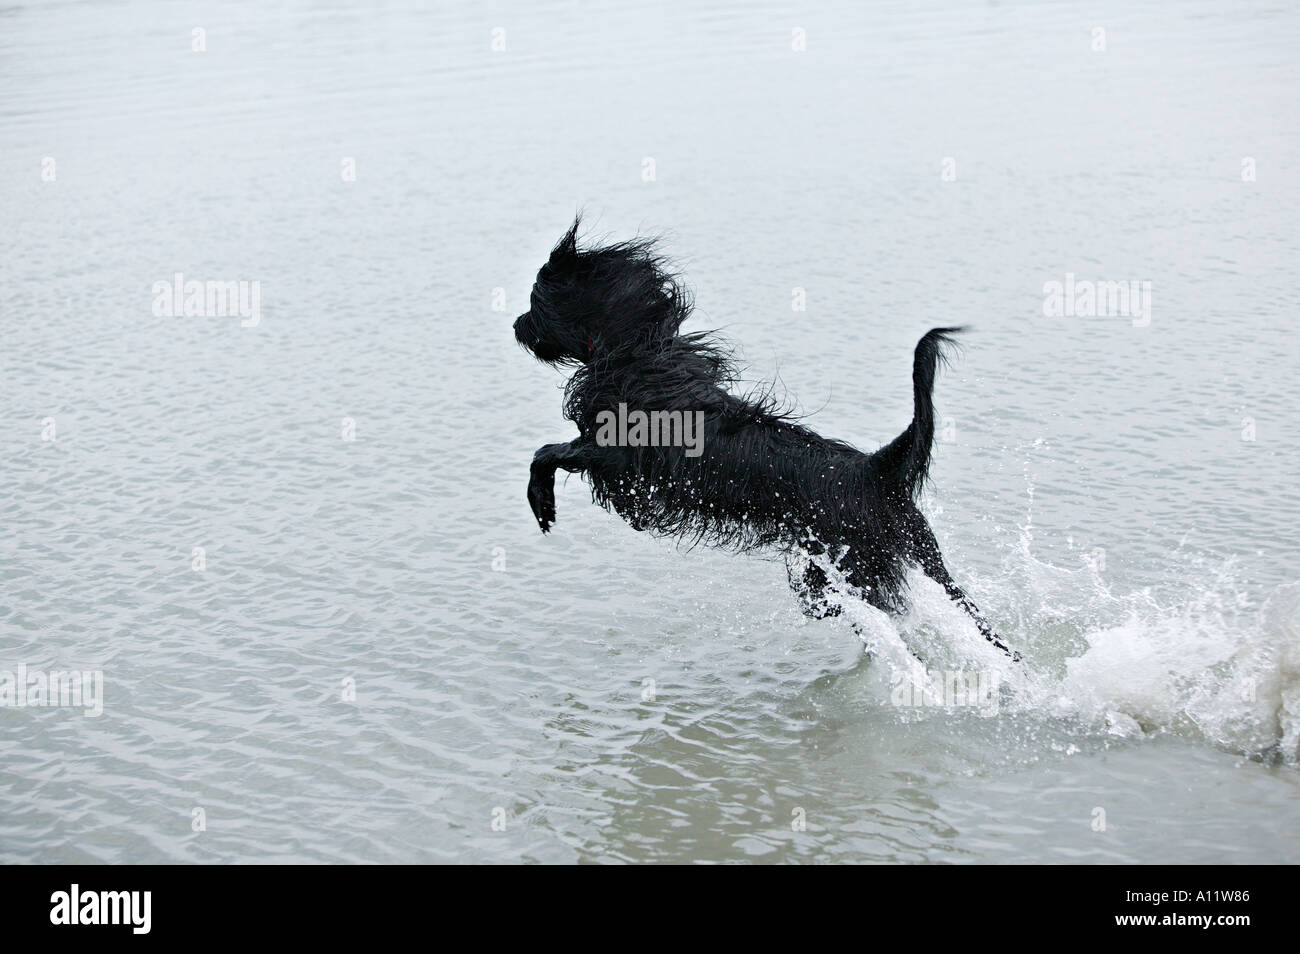 Briard chien noir bondissant hors de l'eau tout en tournant publié Banque D'Images